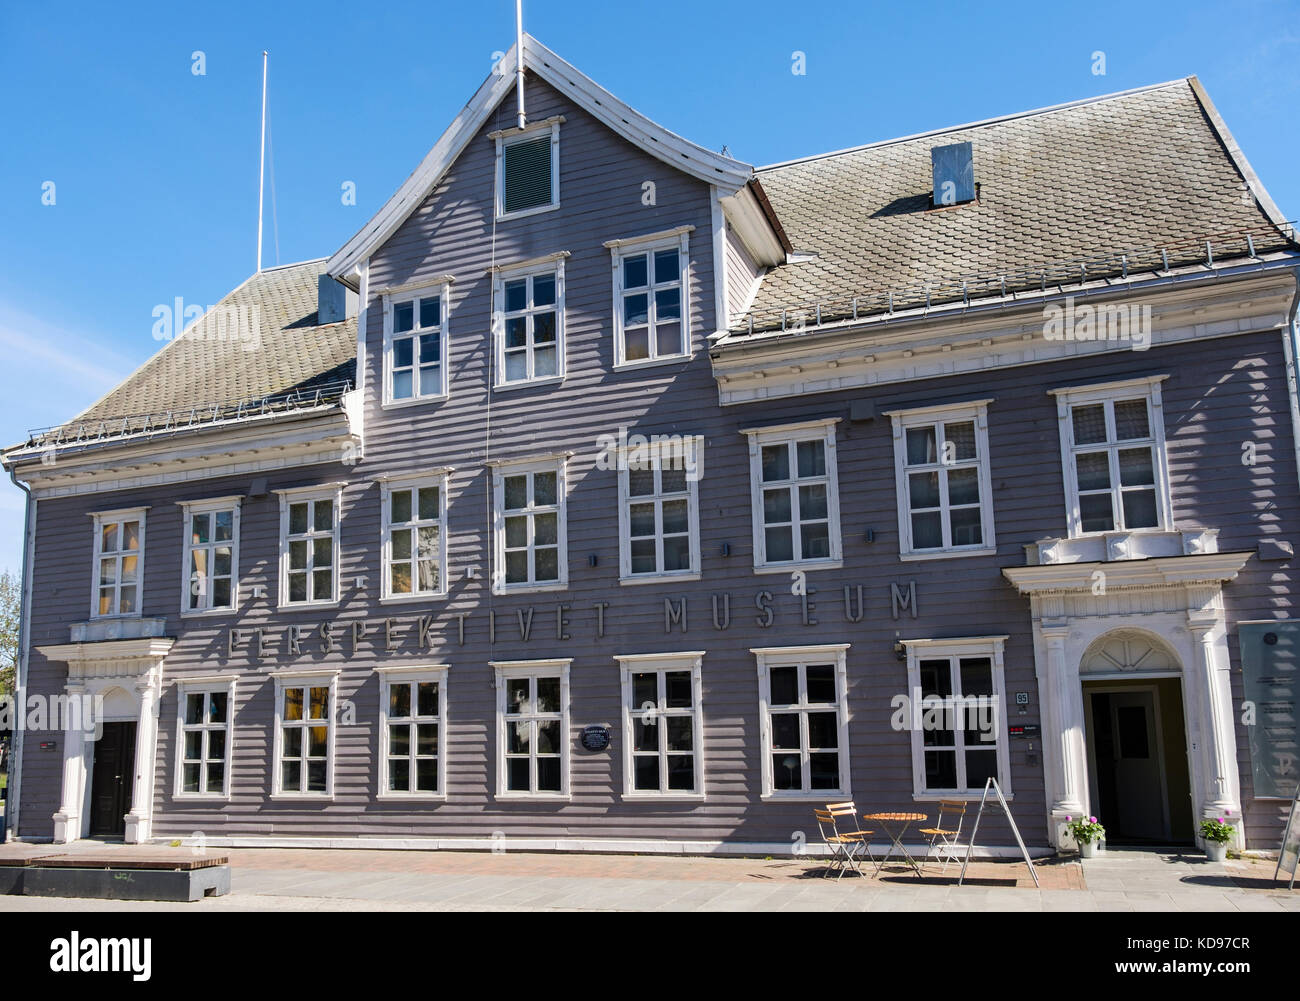 Prospettiva Perspektivet Museo di Fotografia in vecchio stile neoclassico norvegese in legno edificio in centro città. Storgata, Tromso, Troms, Norvegia e Scandinavia Foto Stock